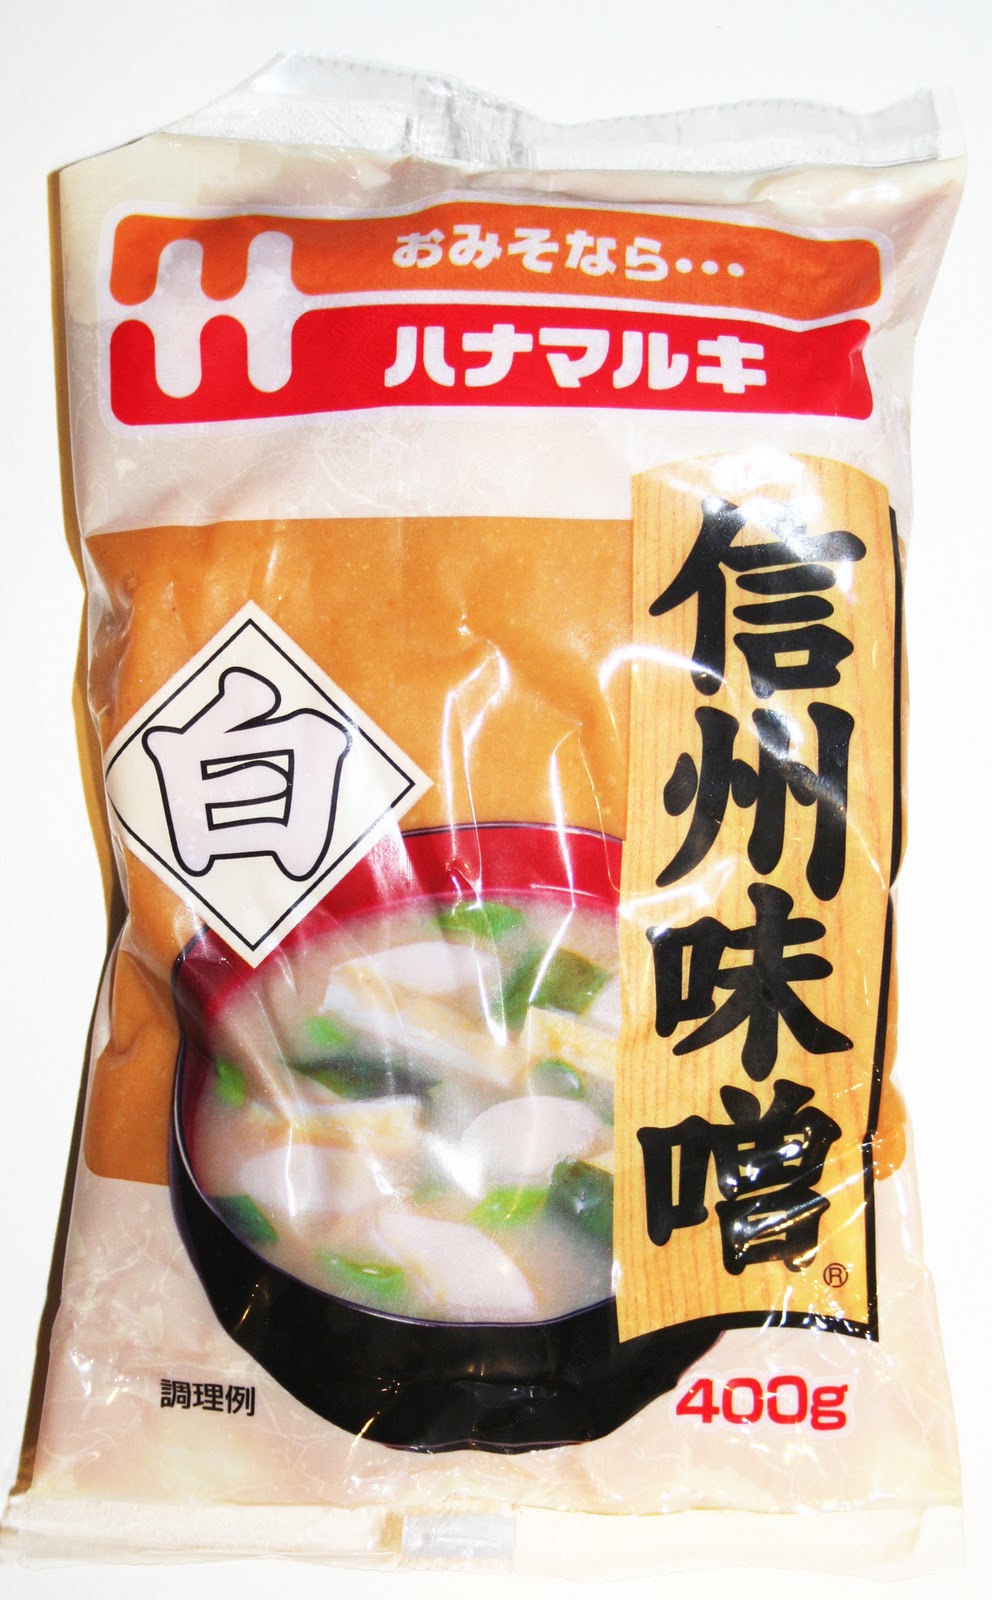 Recette japonaise : pommes de terre en bouillon dashi (nikkorogashi) -  Envie d'Asie